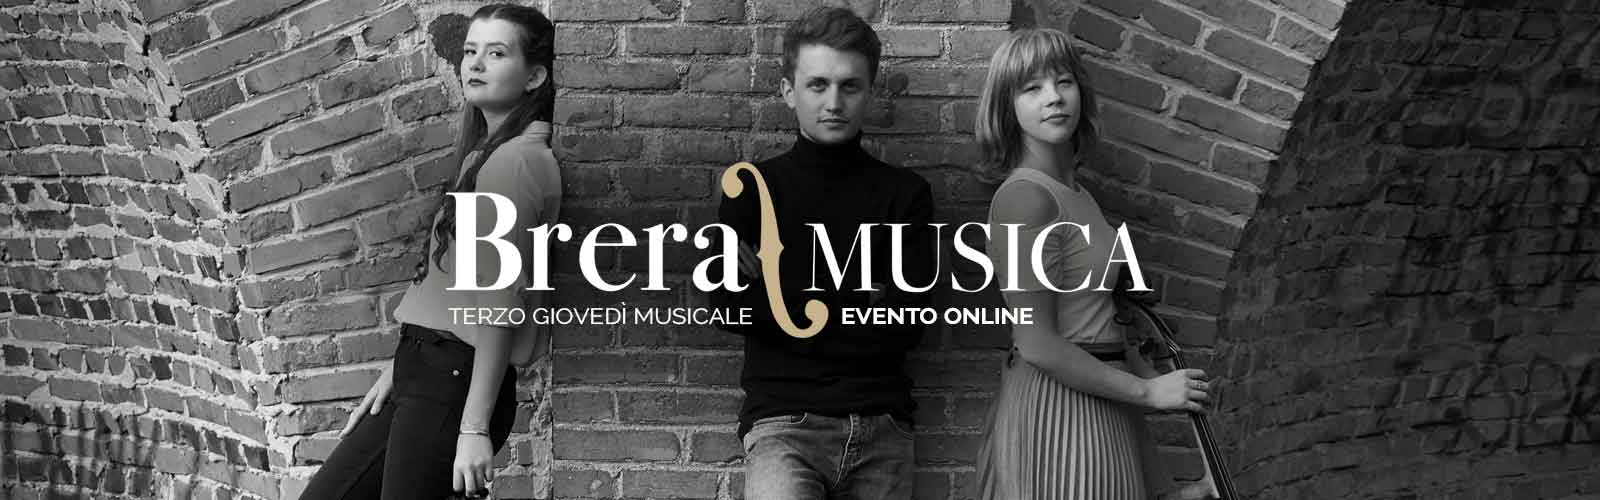 Tornano i terzi giovedì musicali<br> di Brera/Musica online